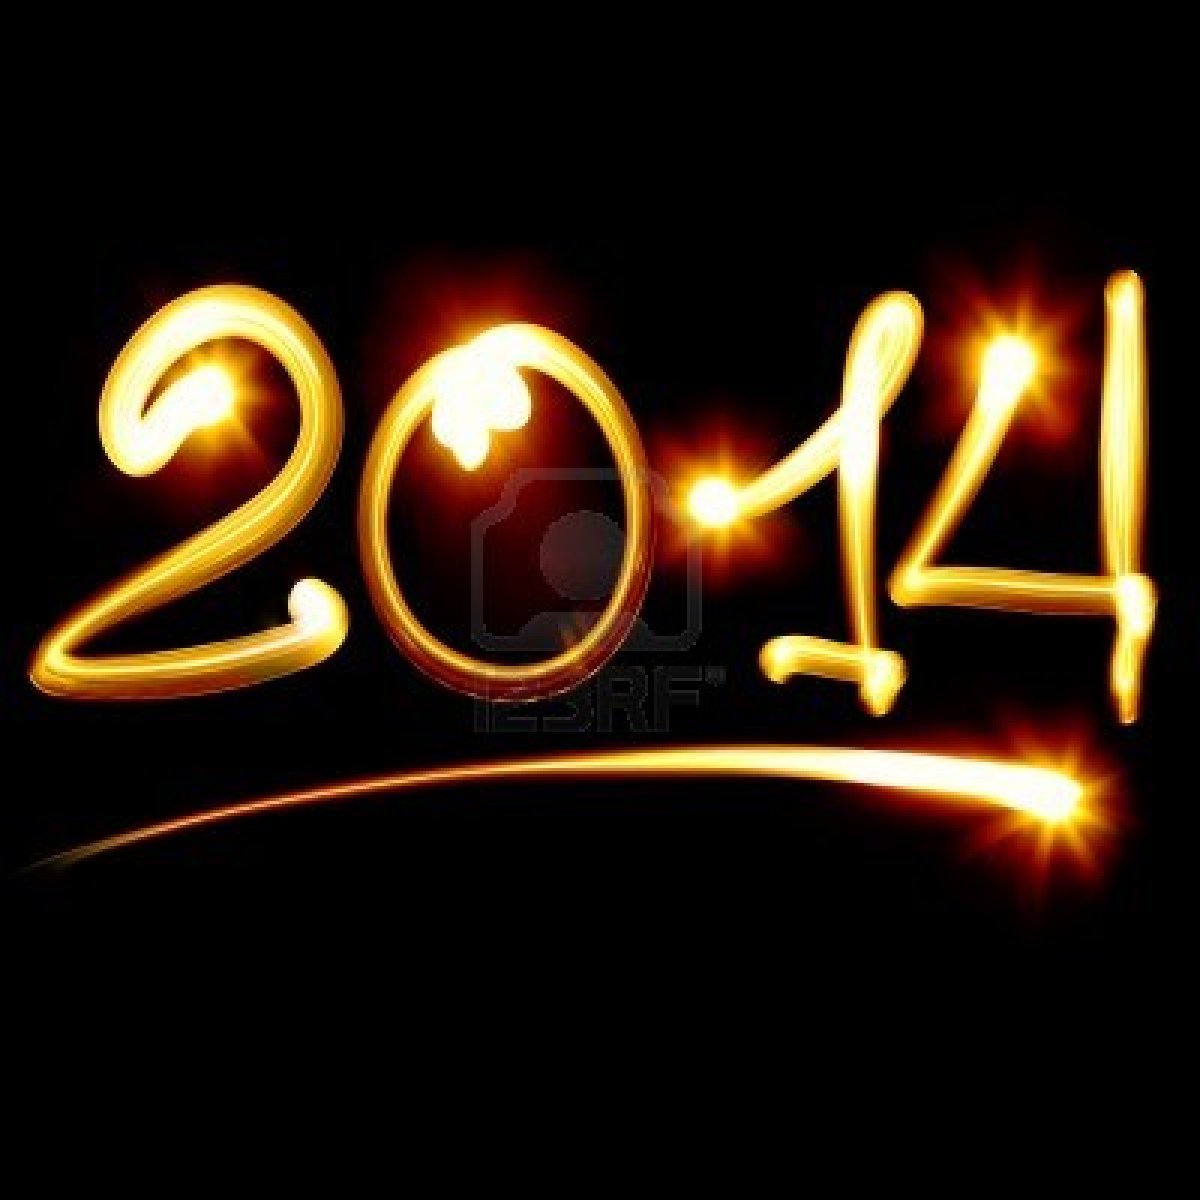 digital new year 2014